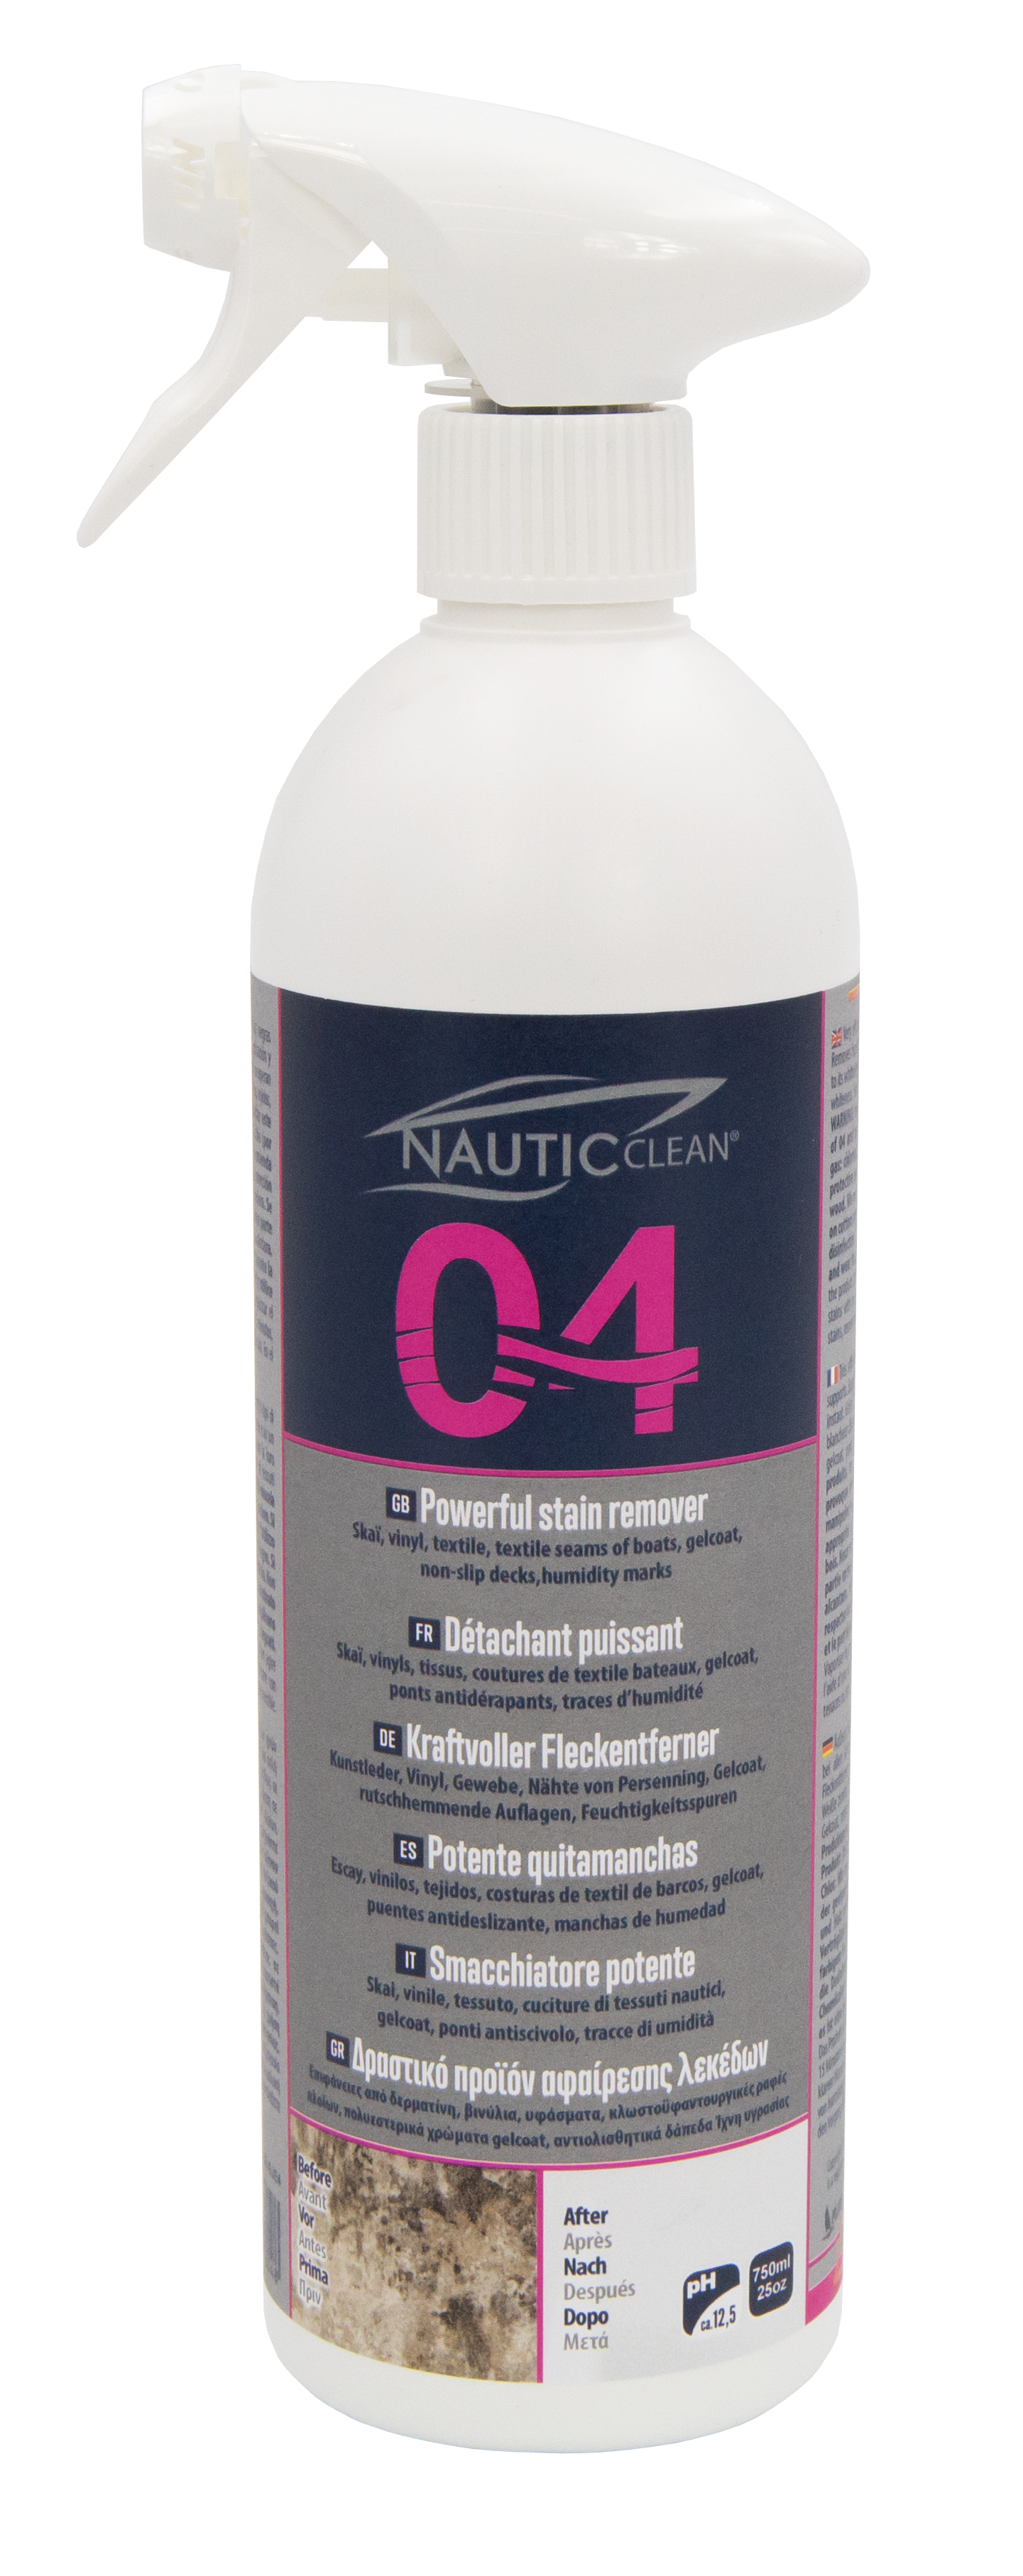 Nautic Clean 04 võimas plekieemaldusvahend spray 750ml